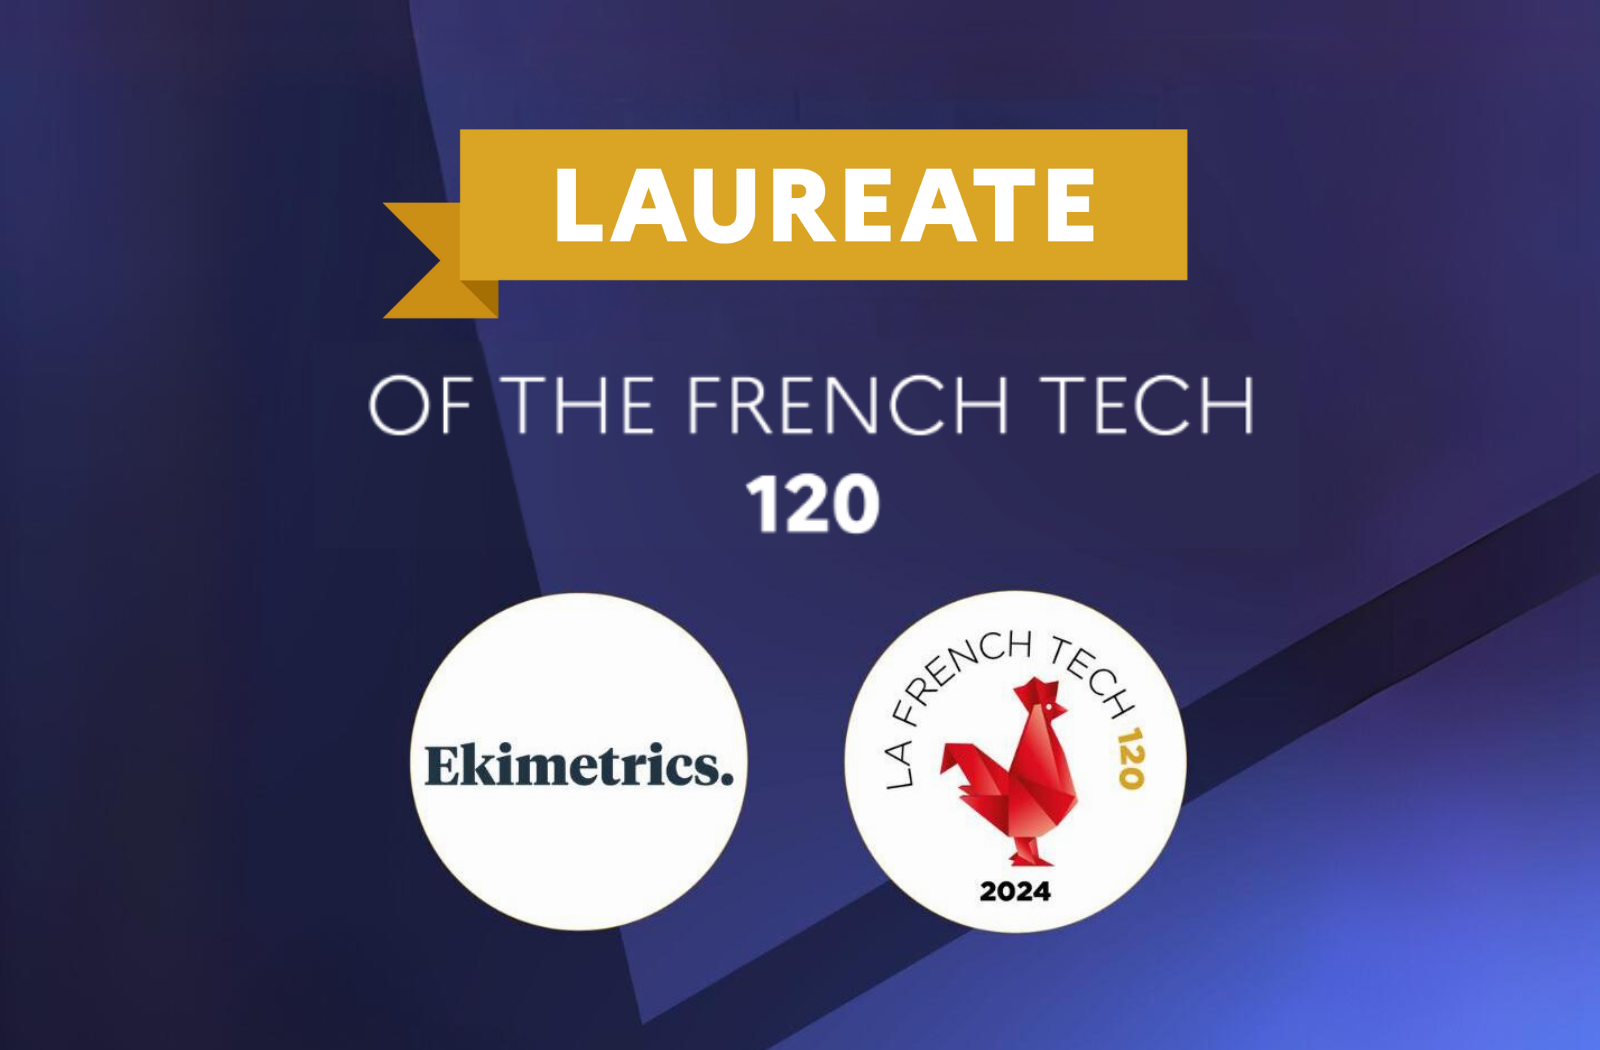 Ekimetrics joins the prestigious French Tech 120 ranking